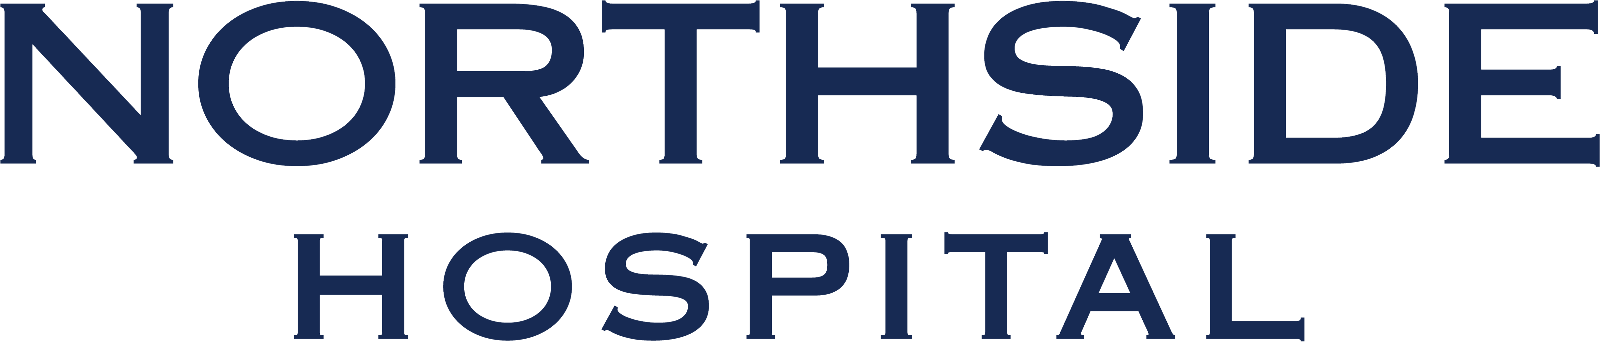 Norhtside Hospital logo